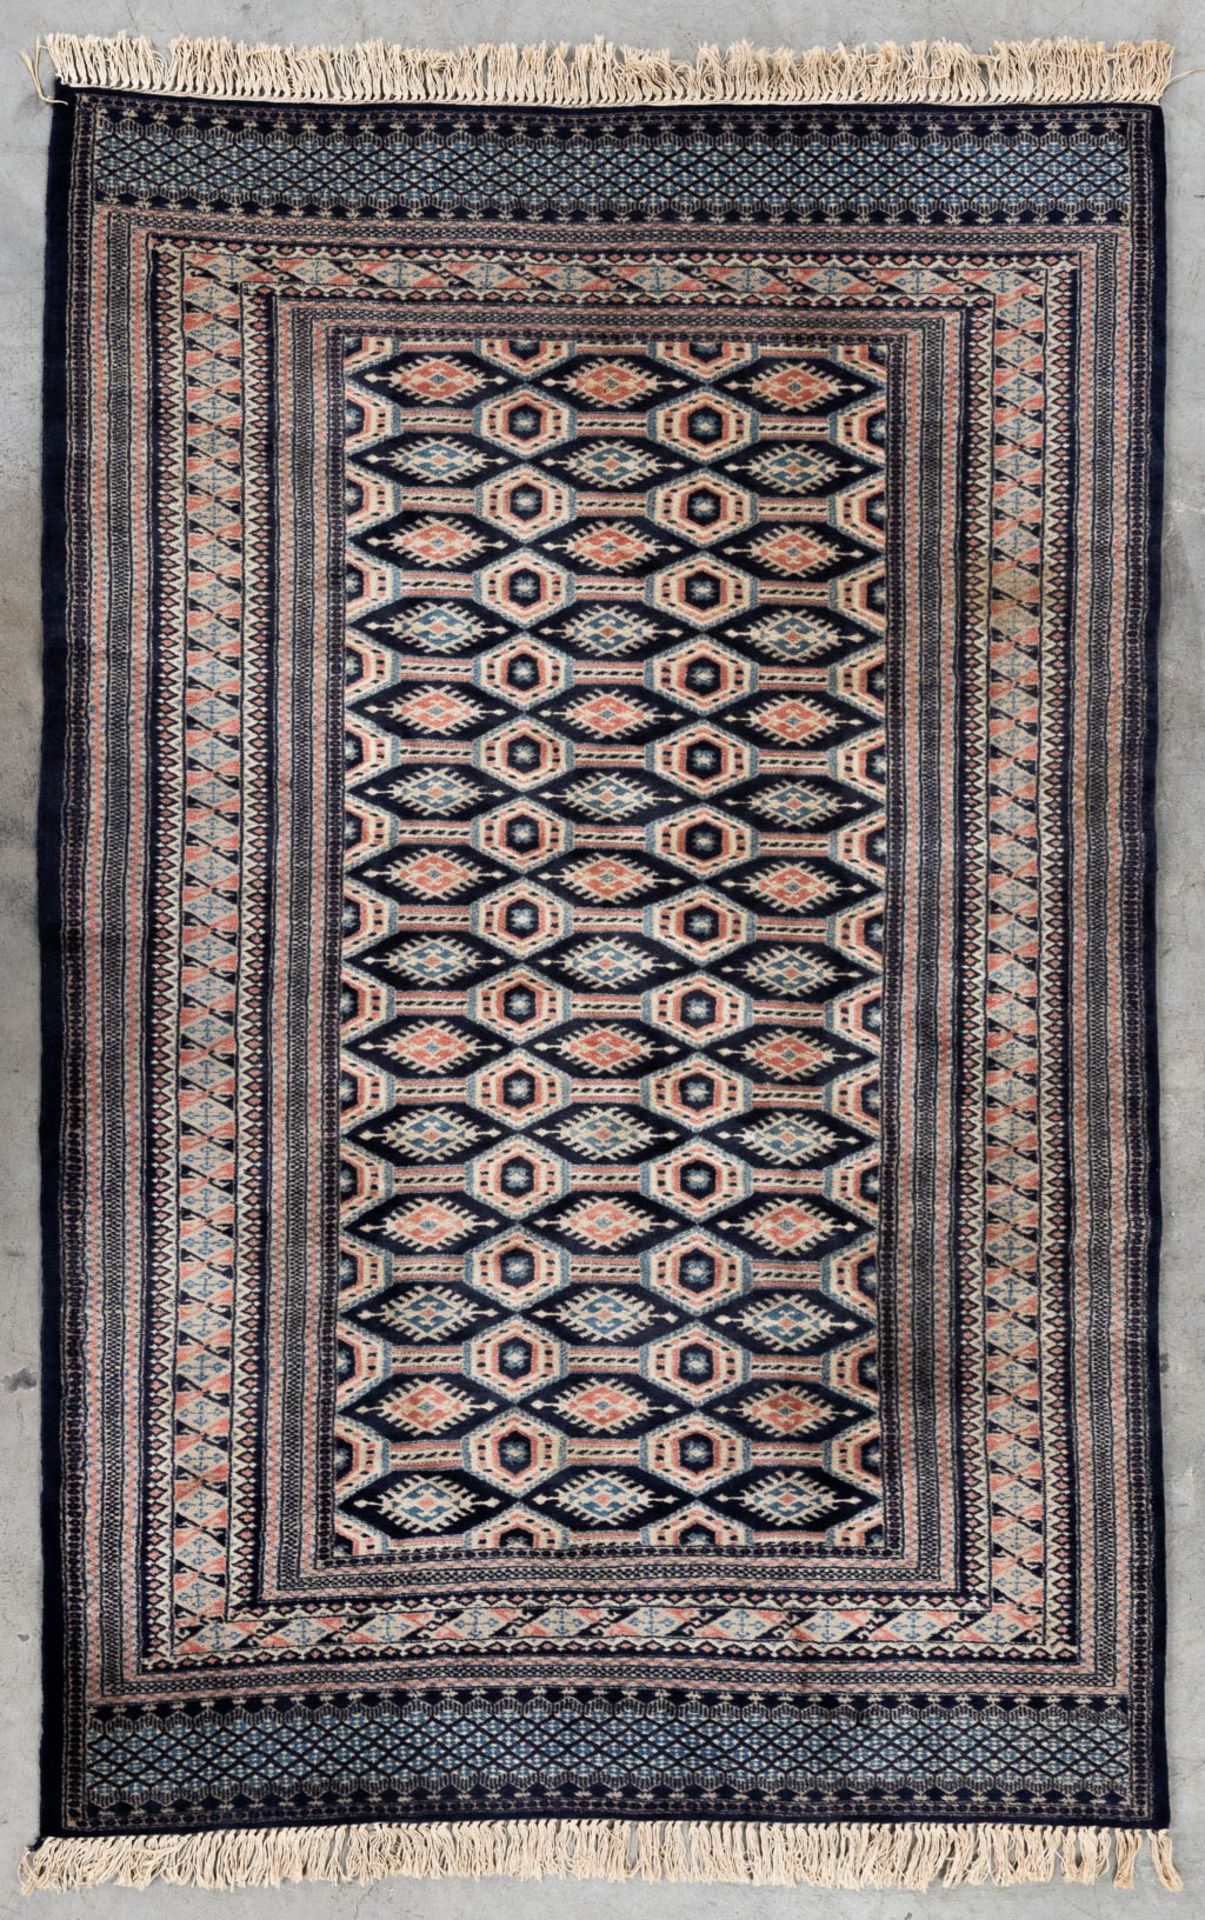 An Oriental hand-made carpet Buchara/Bokhara. (199 x 126 cm). (L: 199 x W: 126 cm)